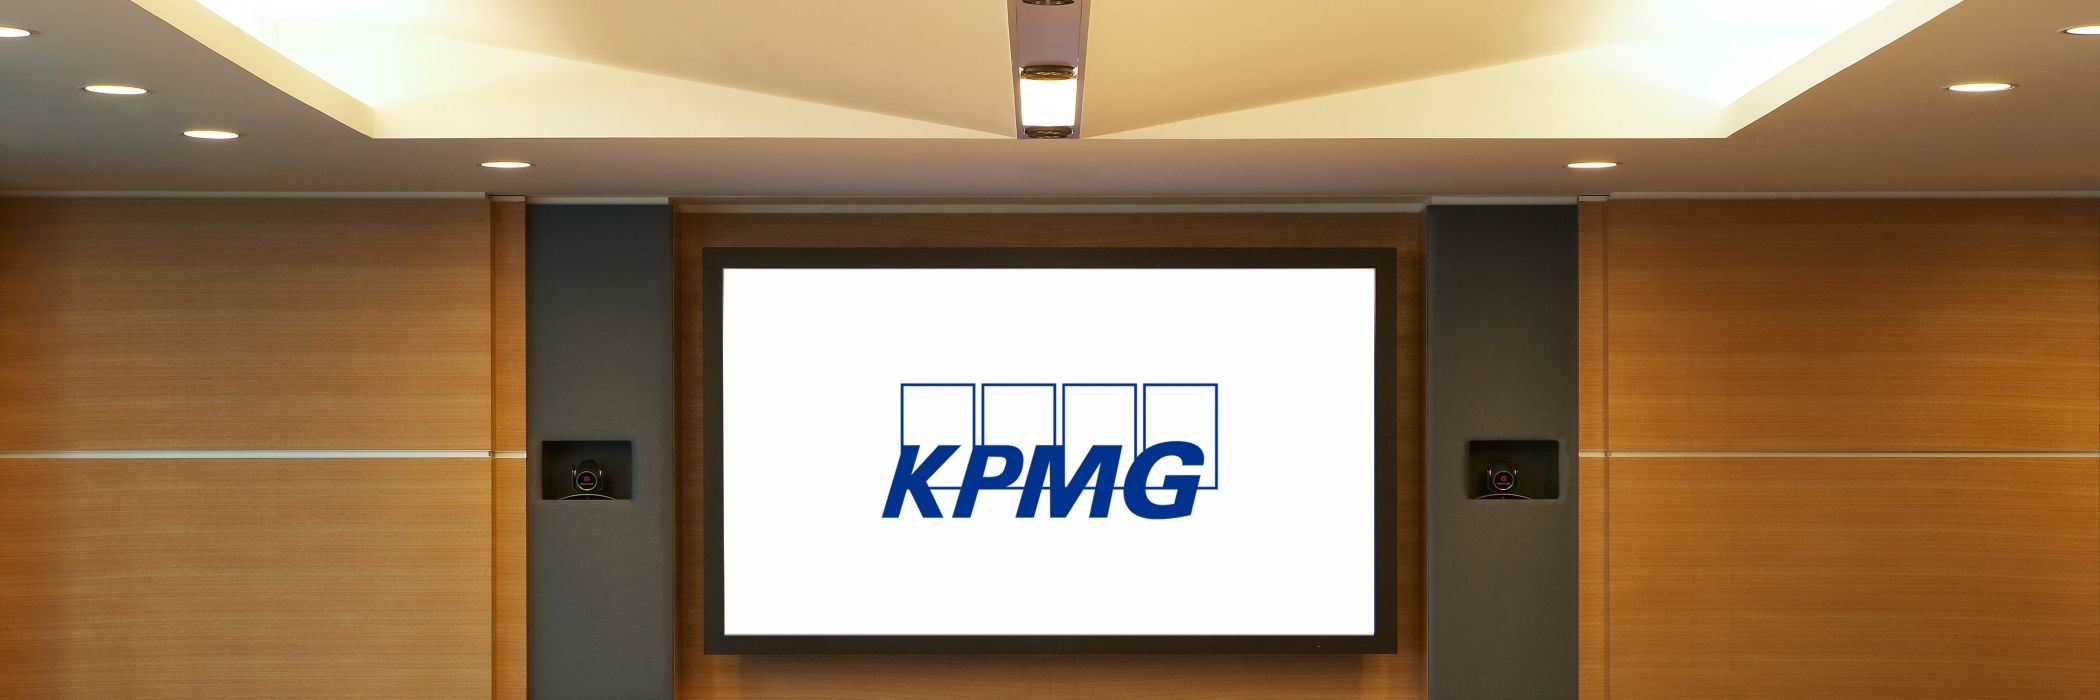 KPMG ofiice